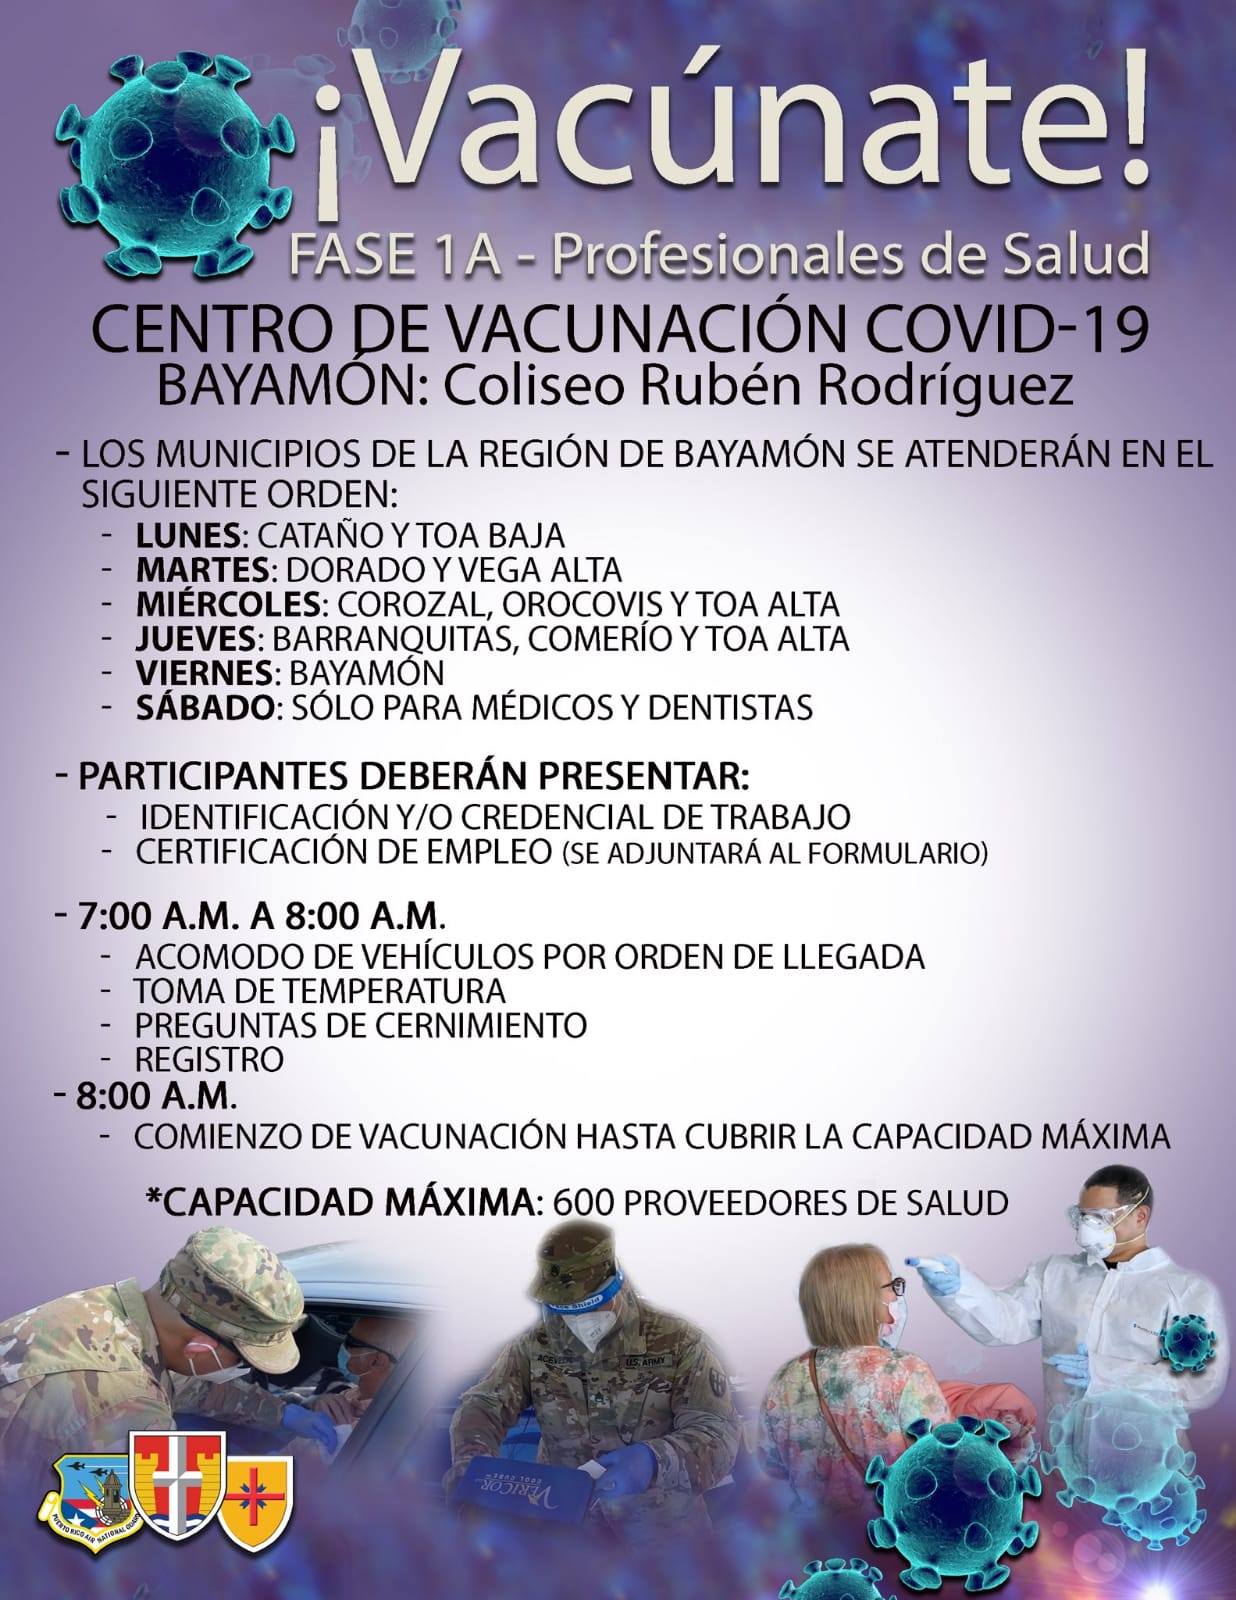 Vacunación para Profesionales de la Salud en el Coliseo Rubén Rodríguez